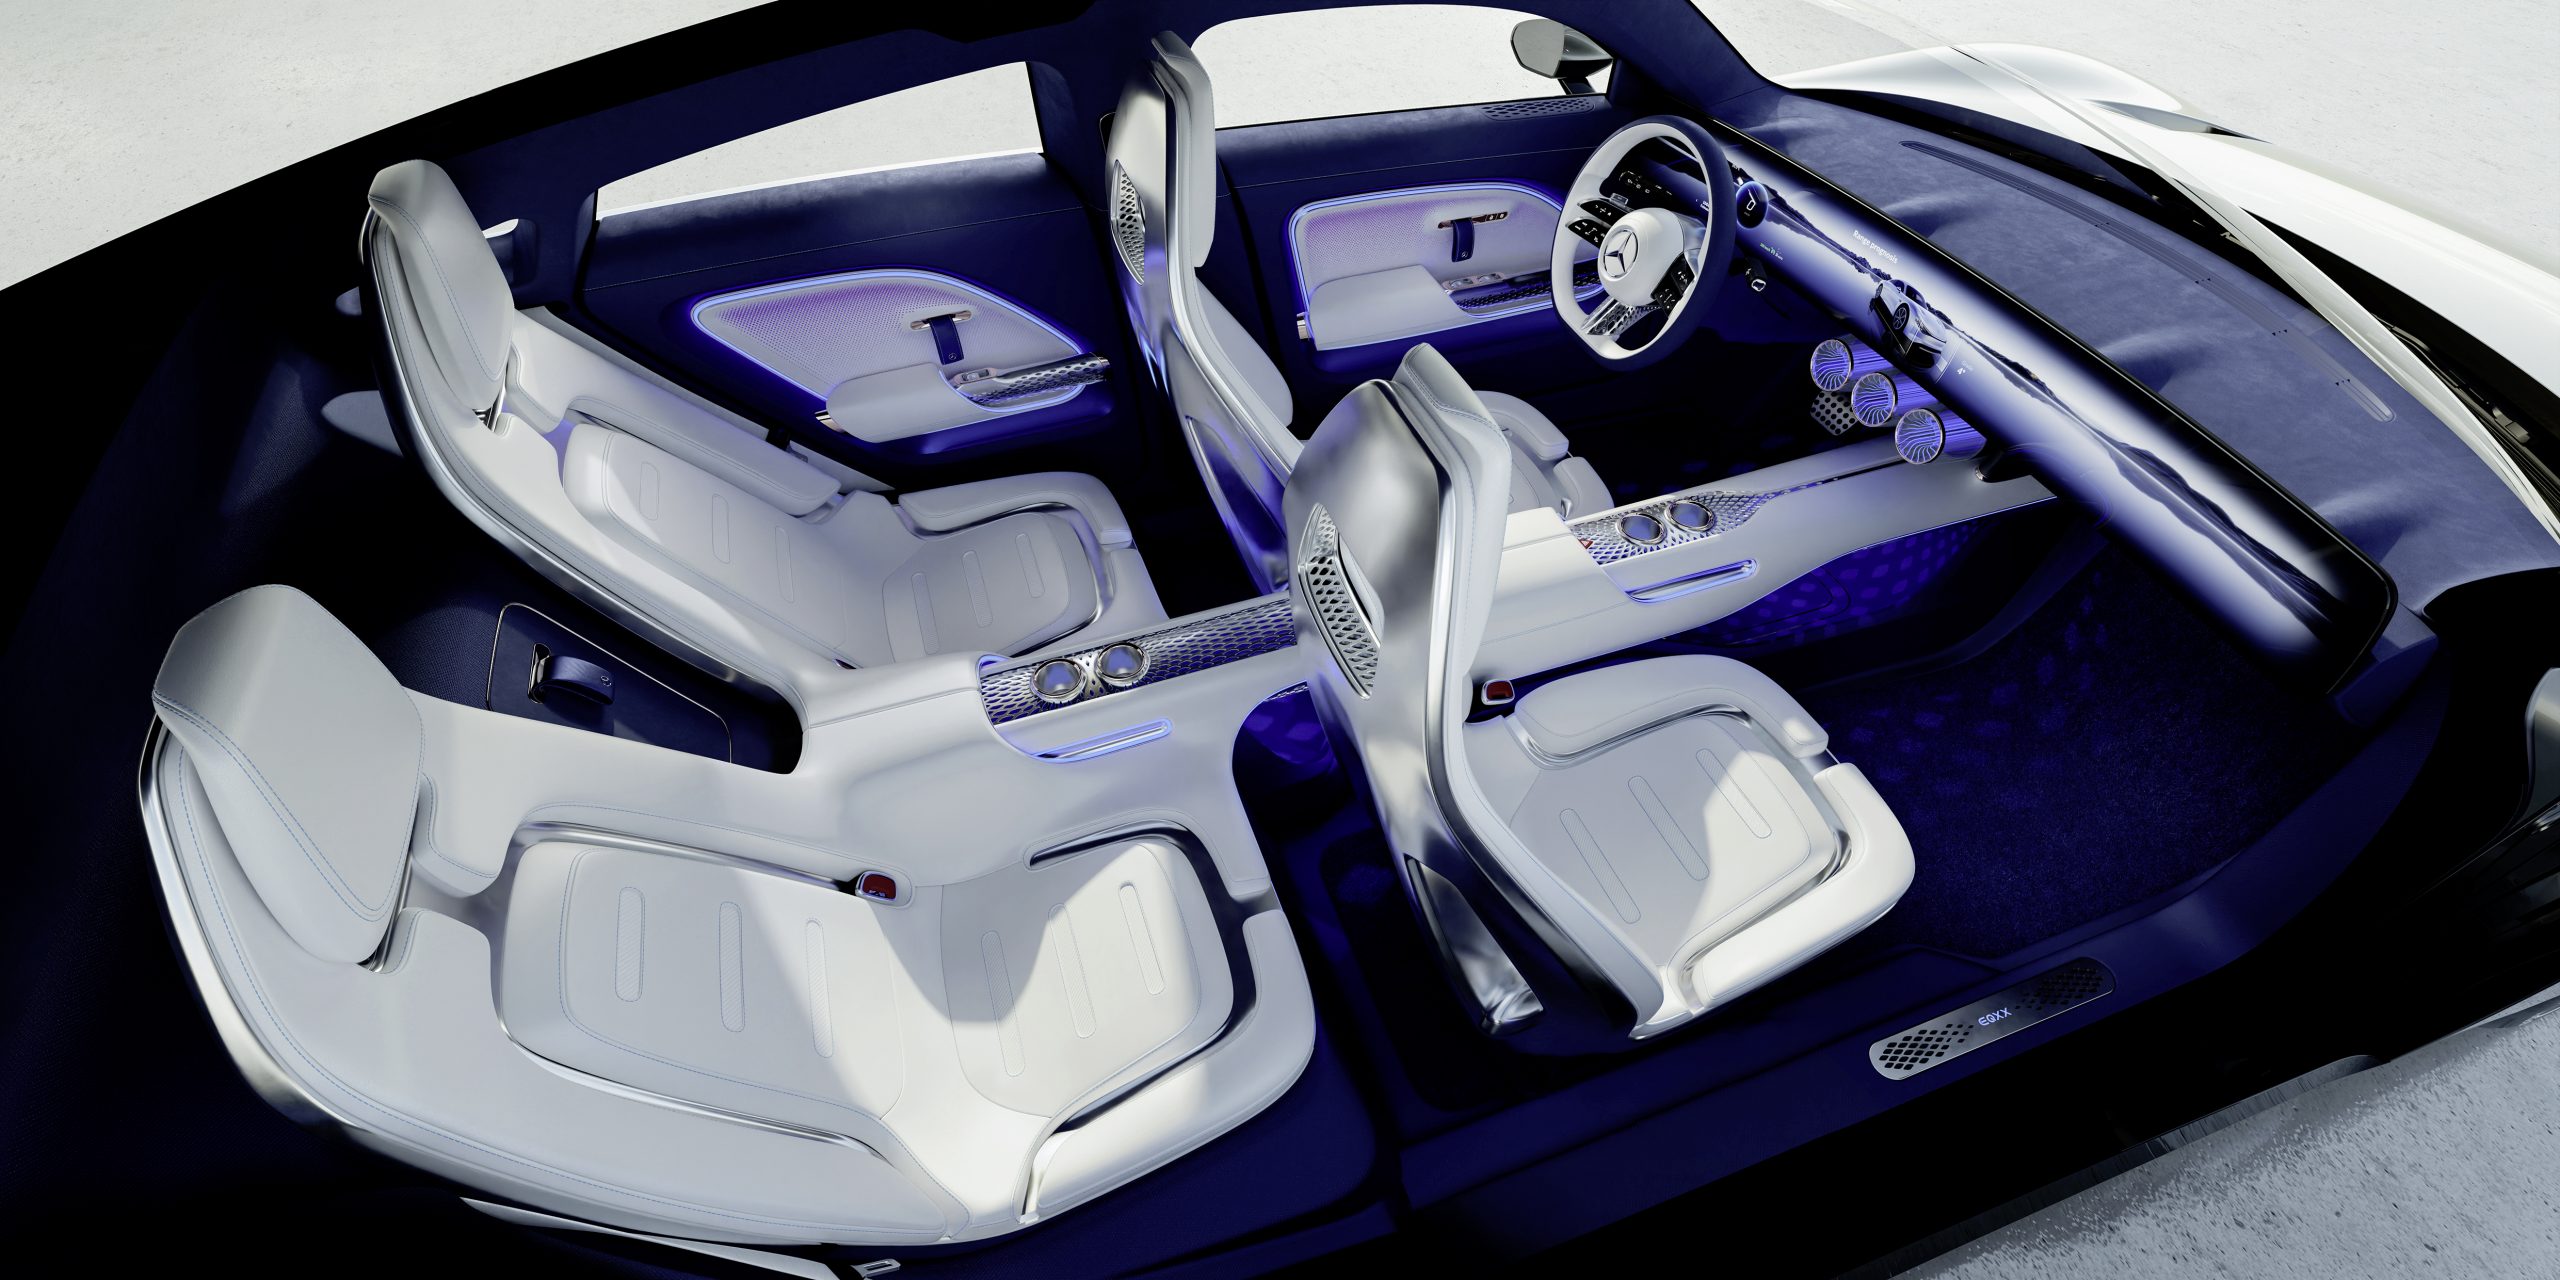 The interior of the Mercedes-Benz EQXX concept EV